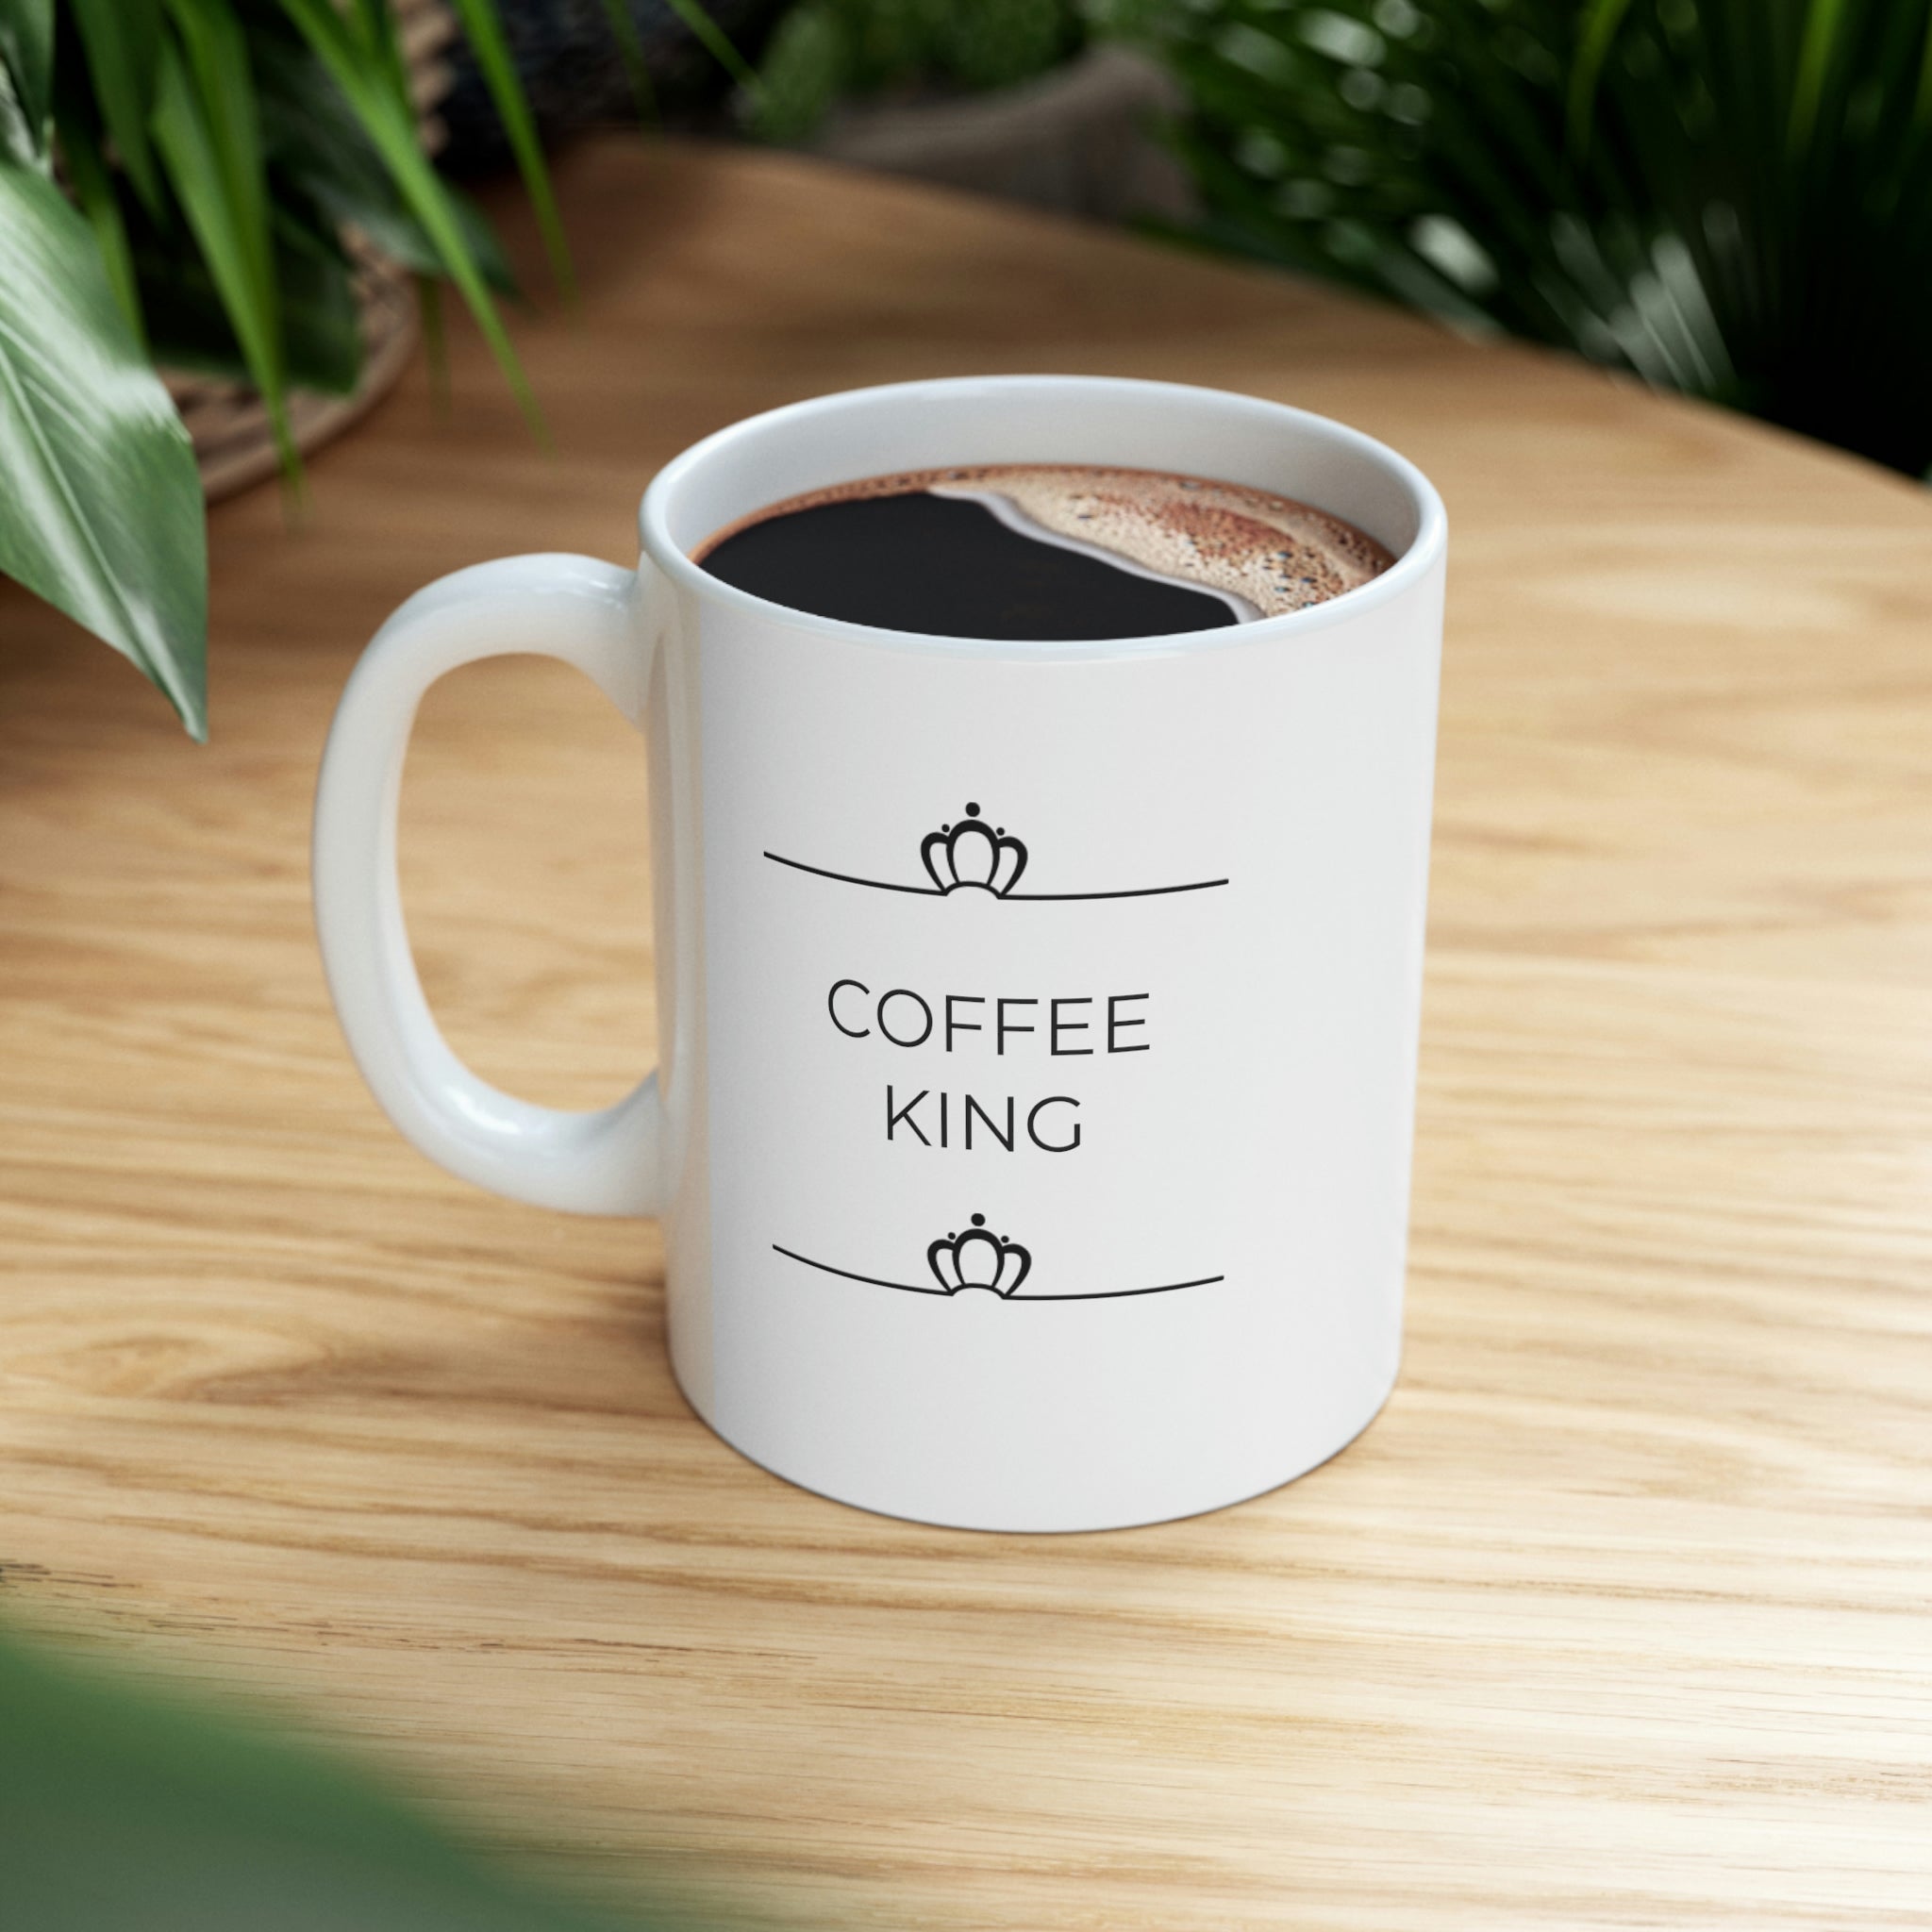 Coffee King Ceramic Mug 11oz